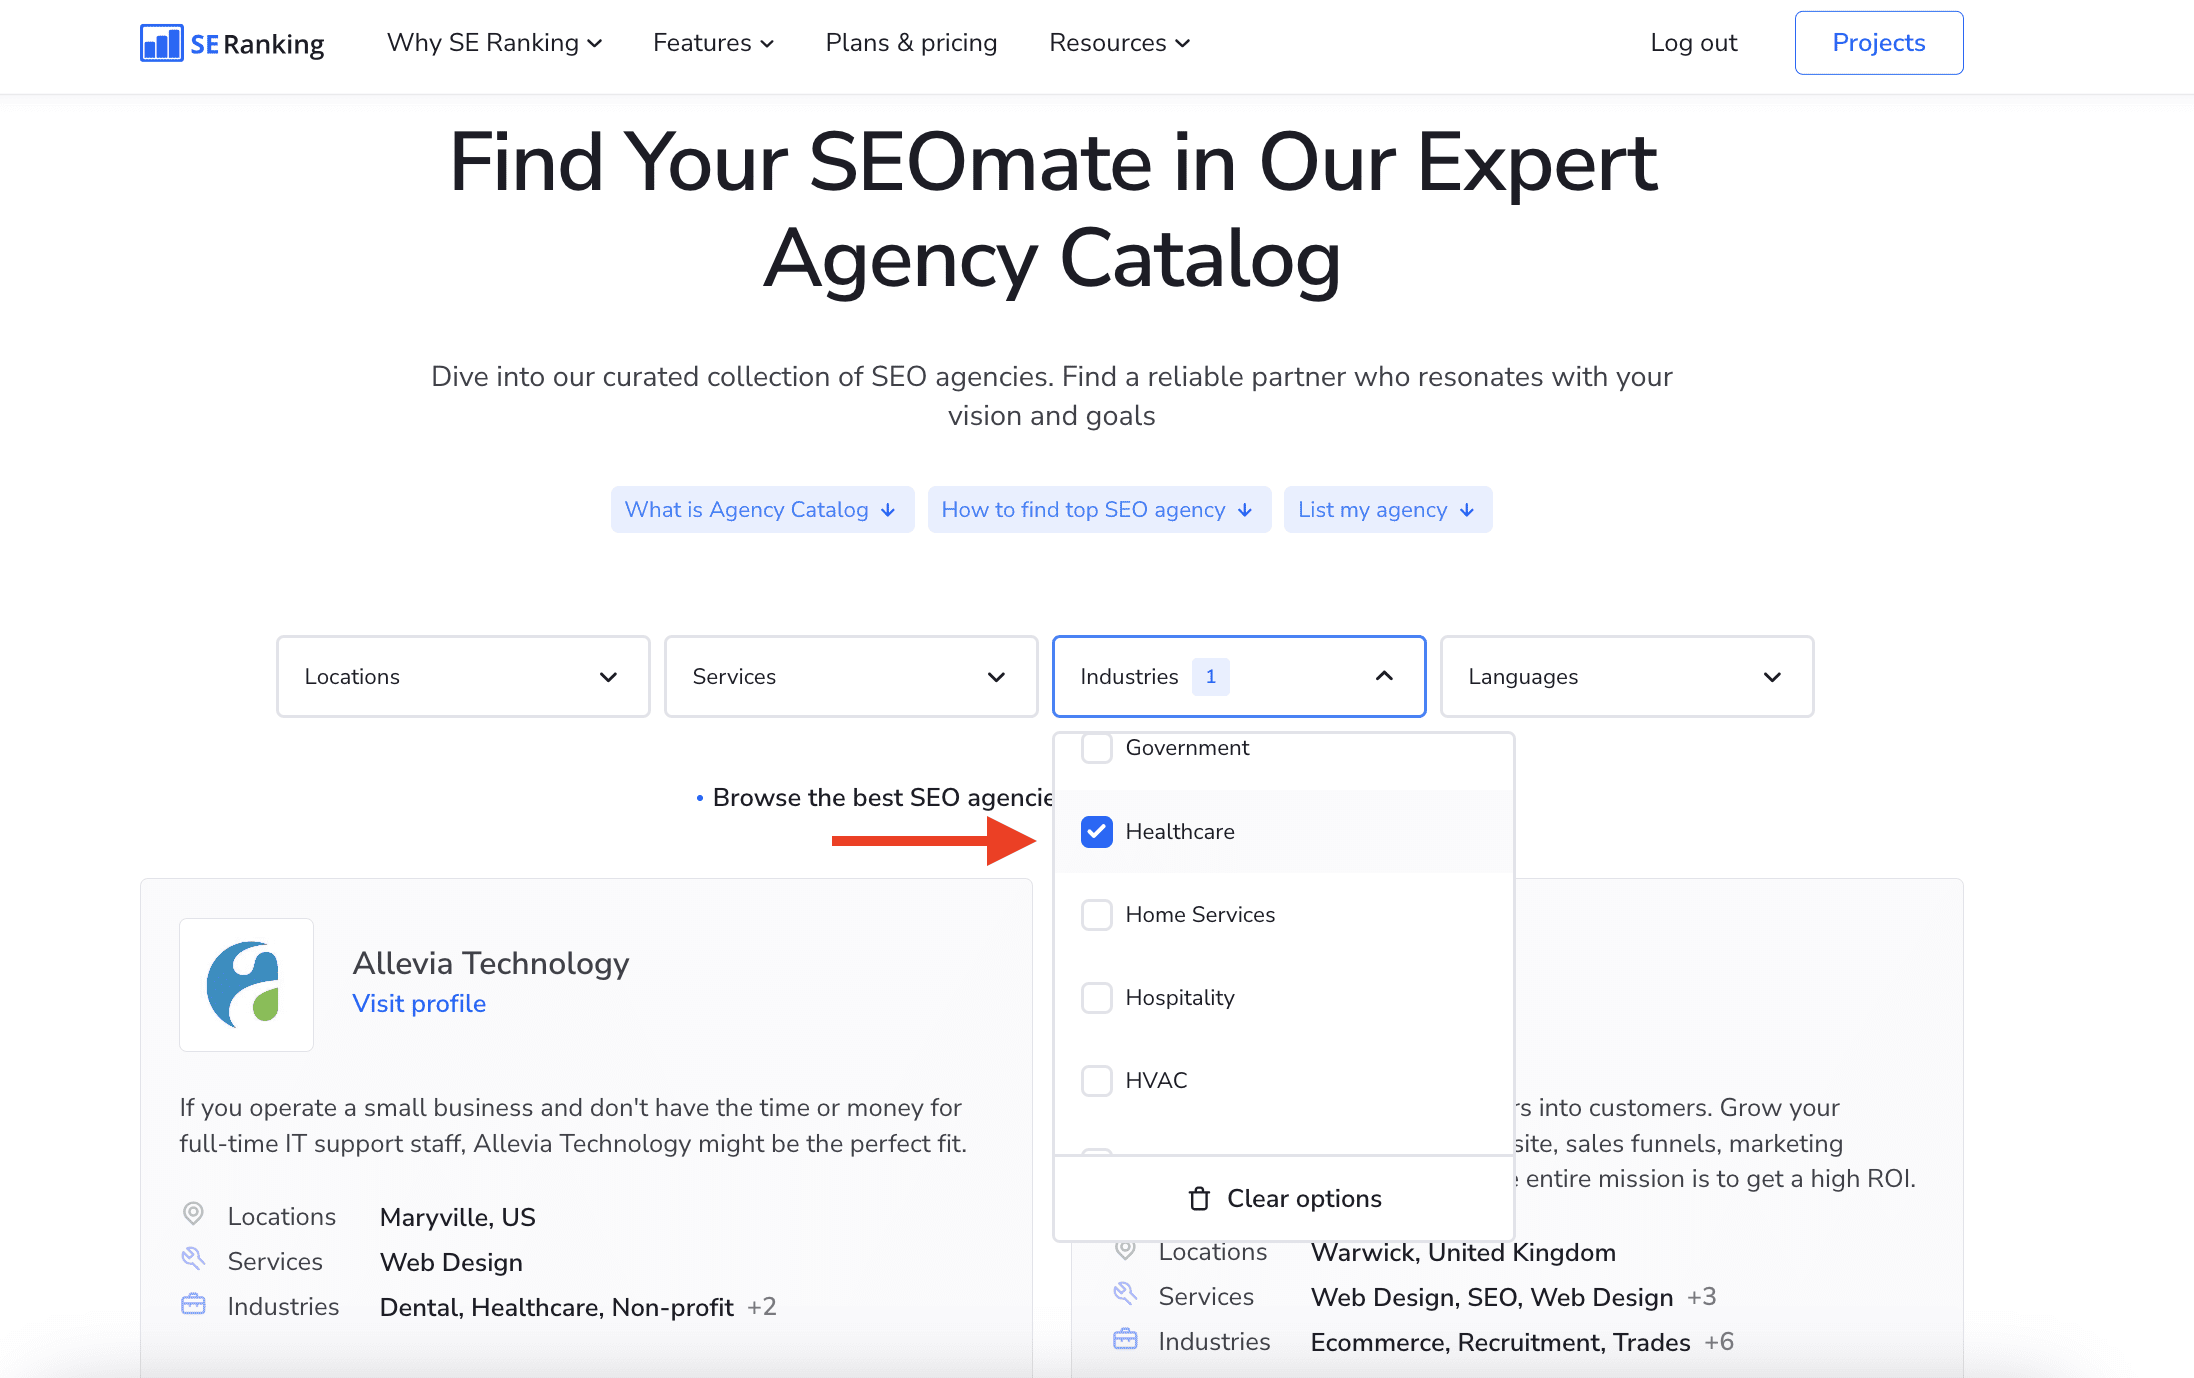 SE Ranking's Agency Catalog